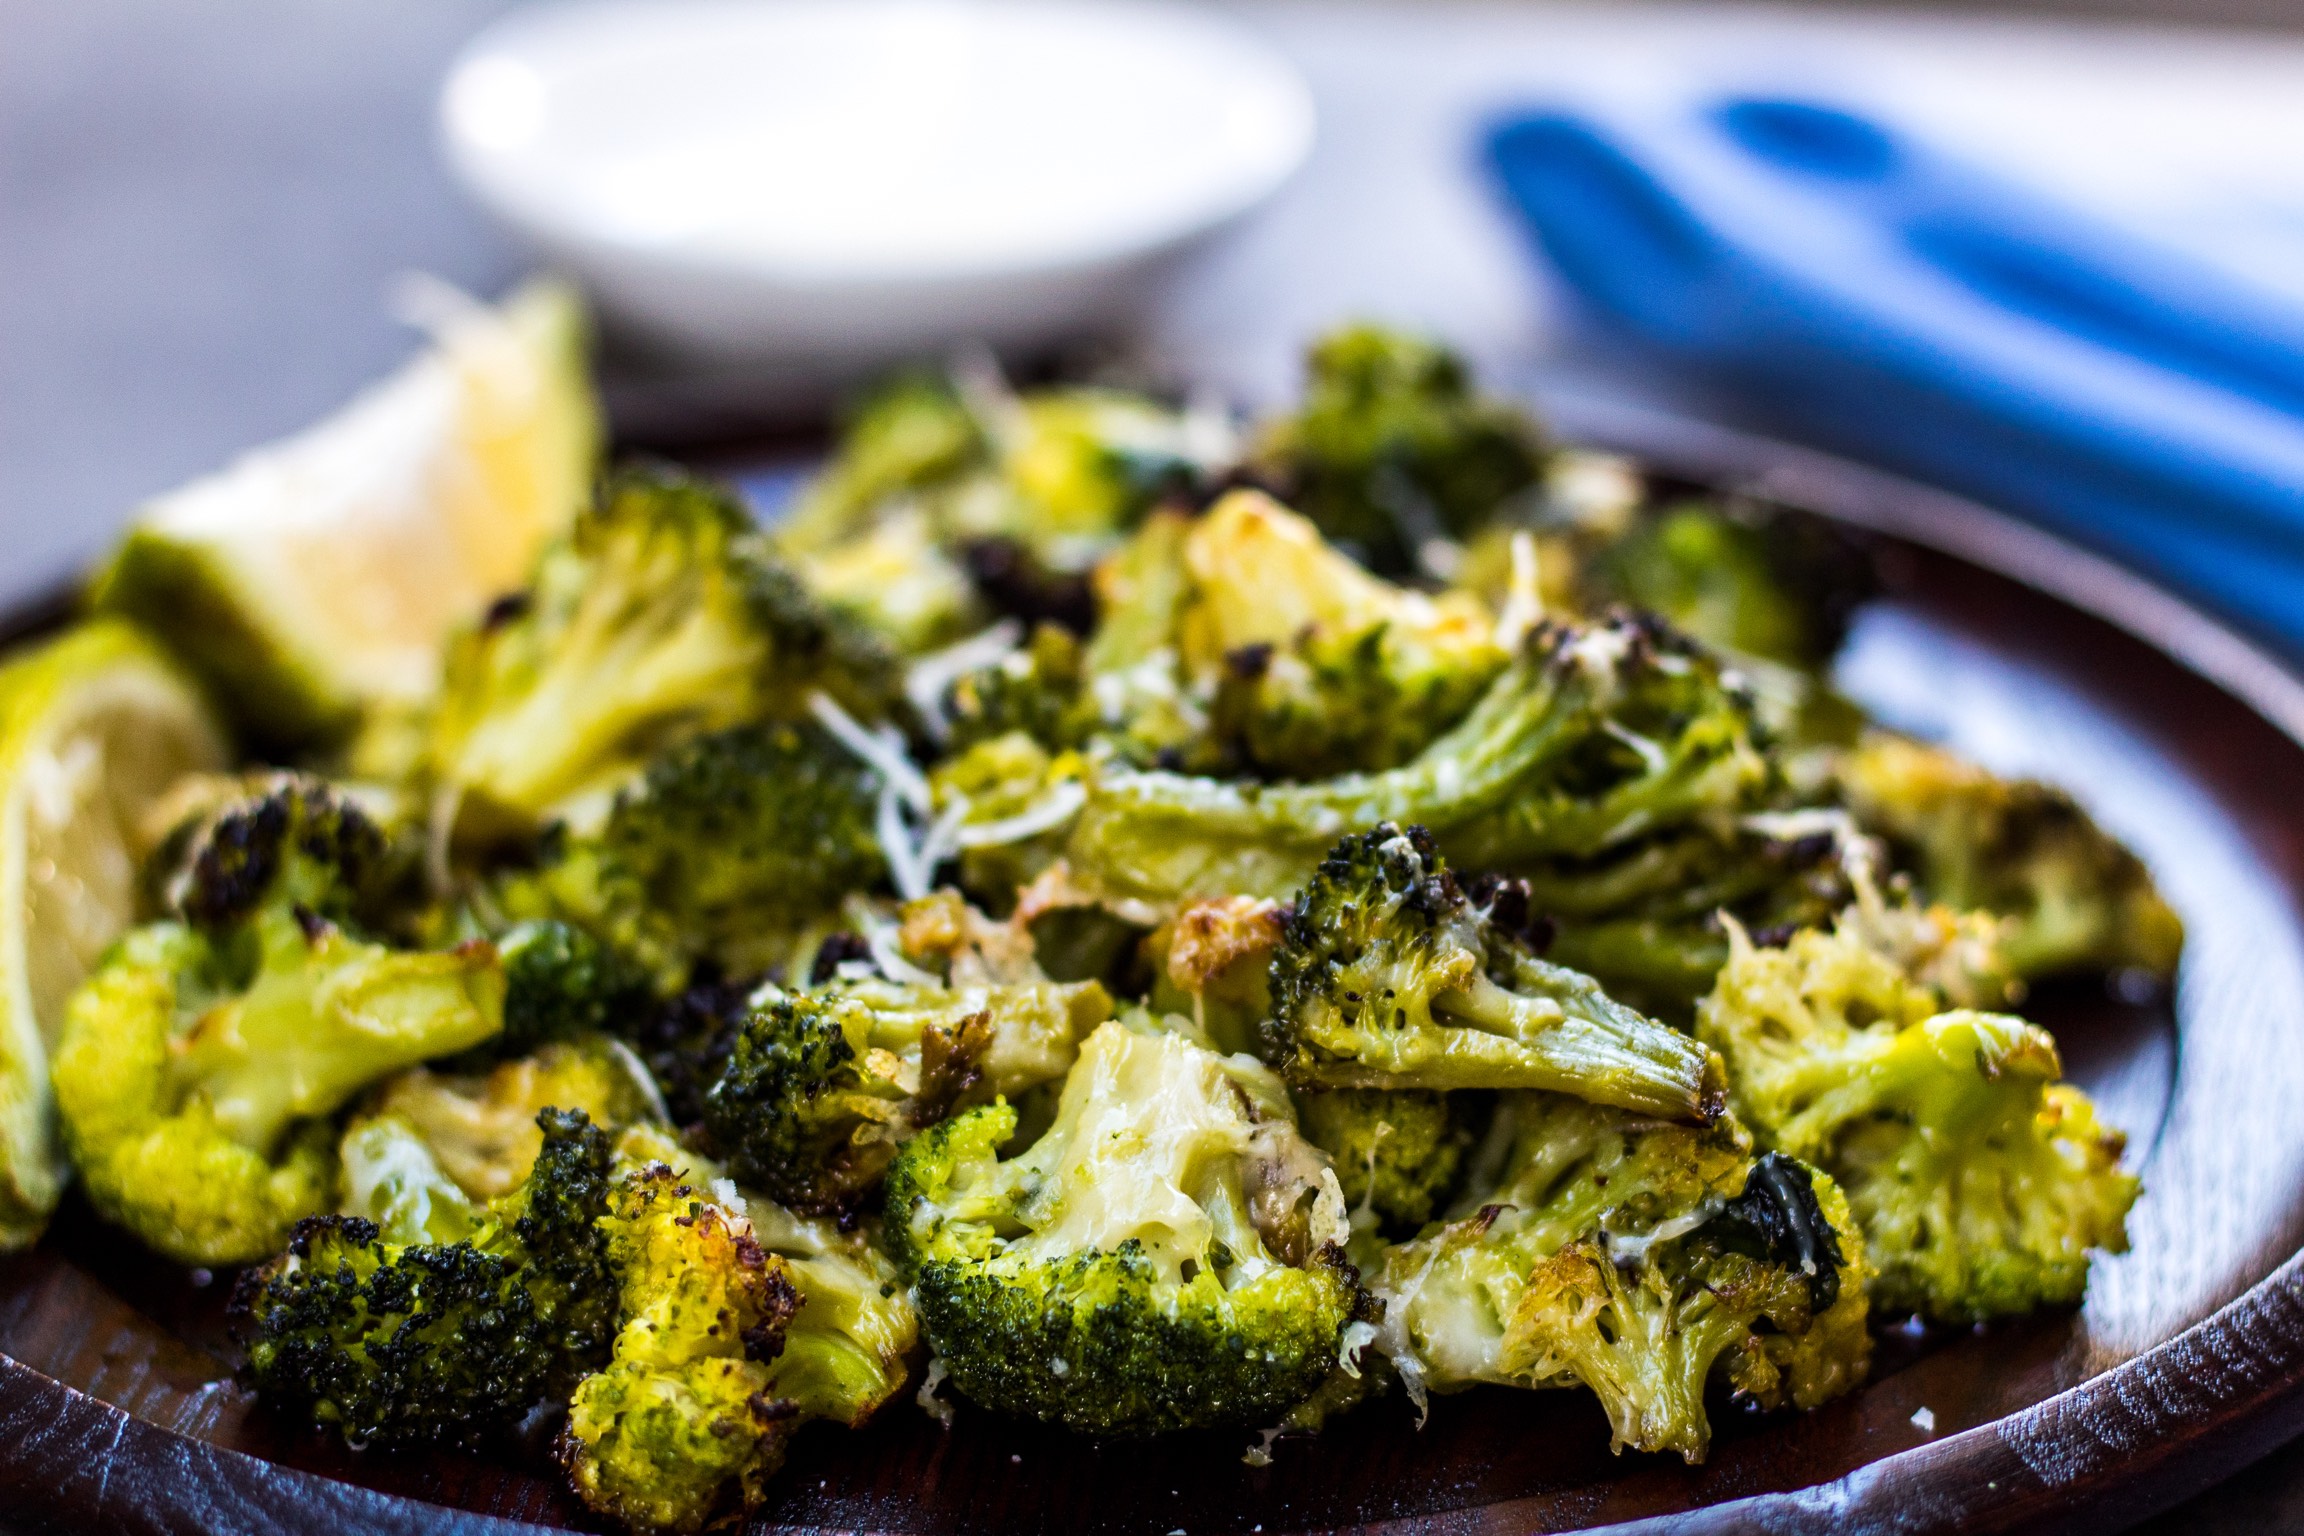 Roasted broccoli